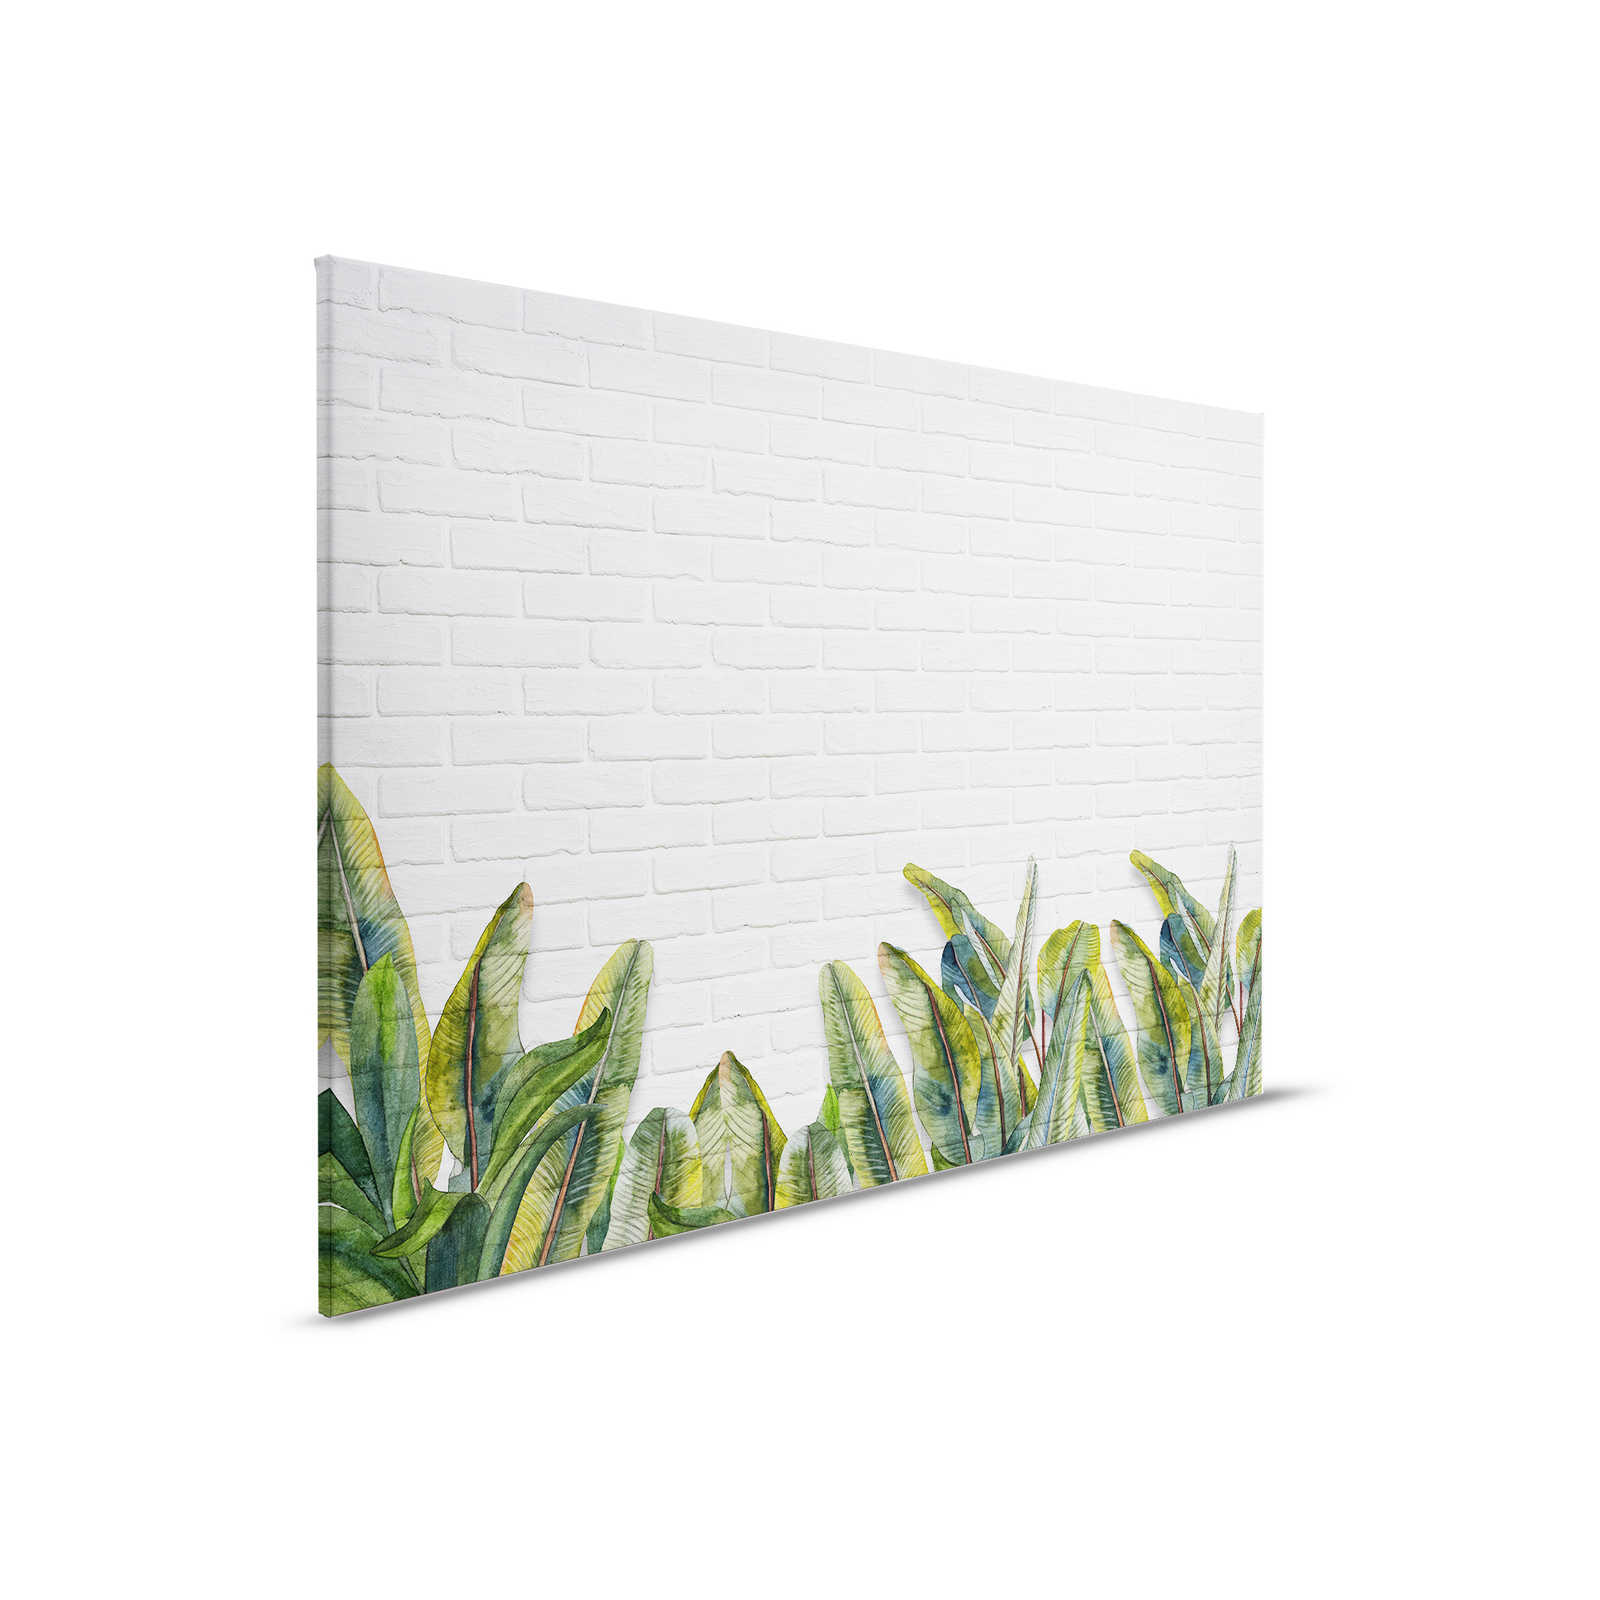 Leinwandbild mit Blättern vor weißer Backsteinmauer – 0,90 m x 0,60 m
